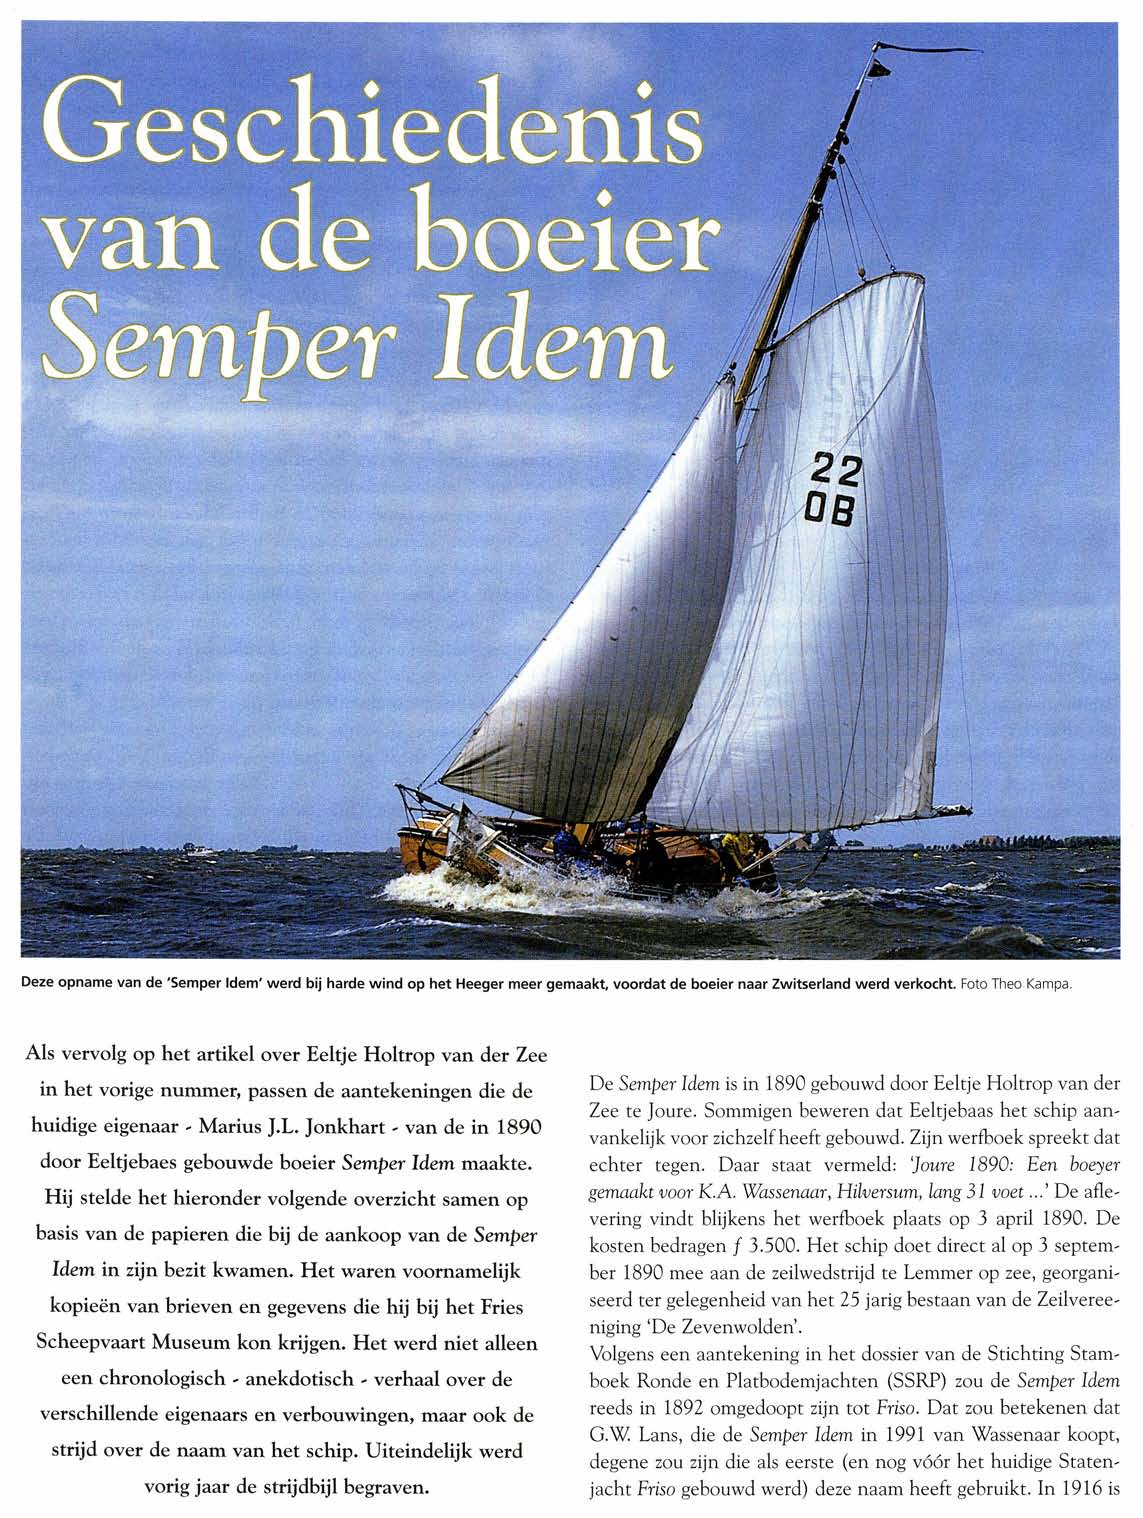 Deze opname van de 'Semper Idem' werd bij harde wind op het Heeger meer gemaakt, voordat de boeier naar Zwitserland werd verkocht. Foto Theo Kampa.